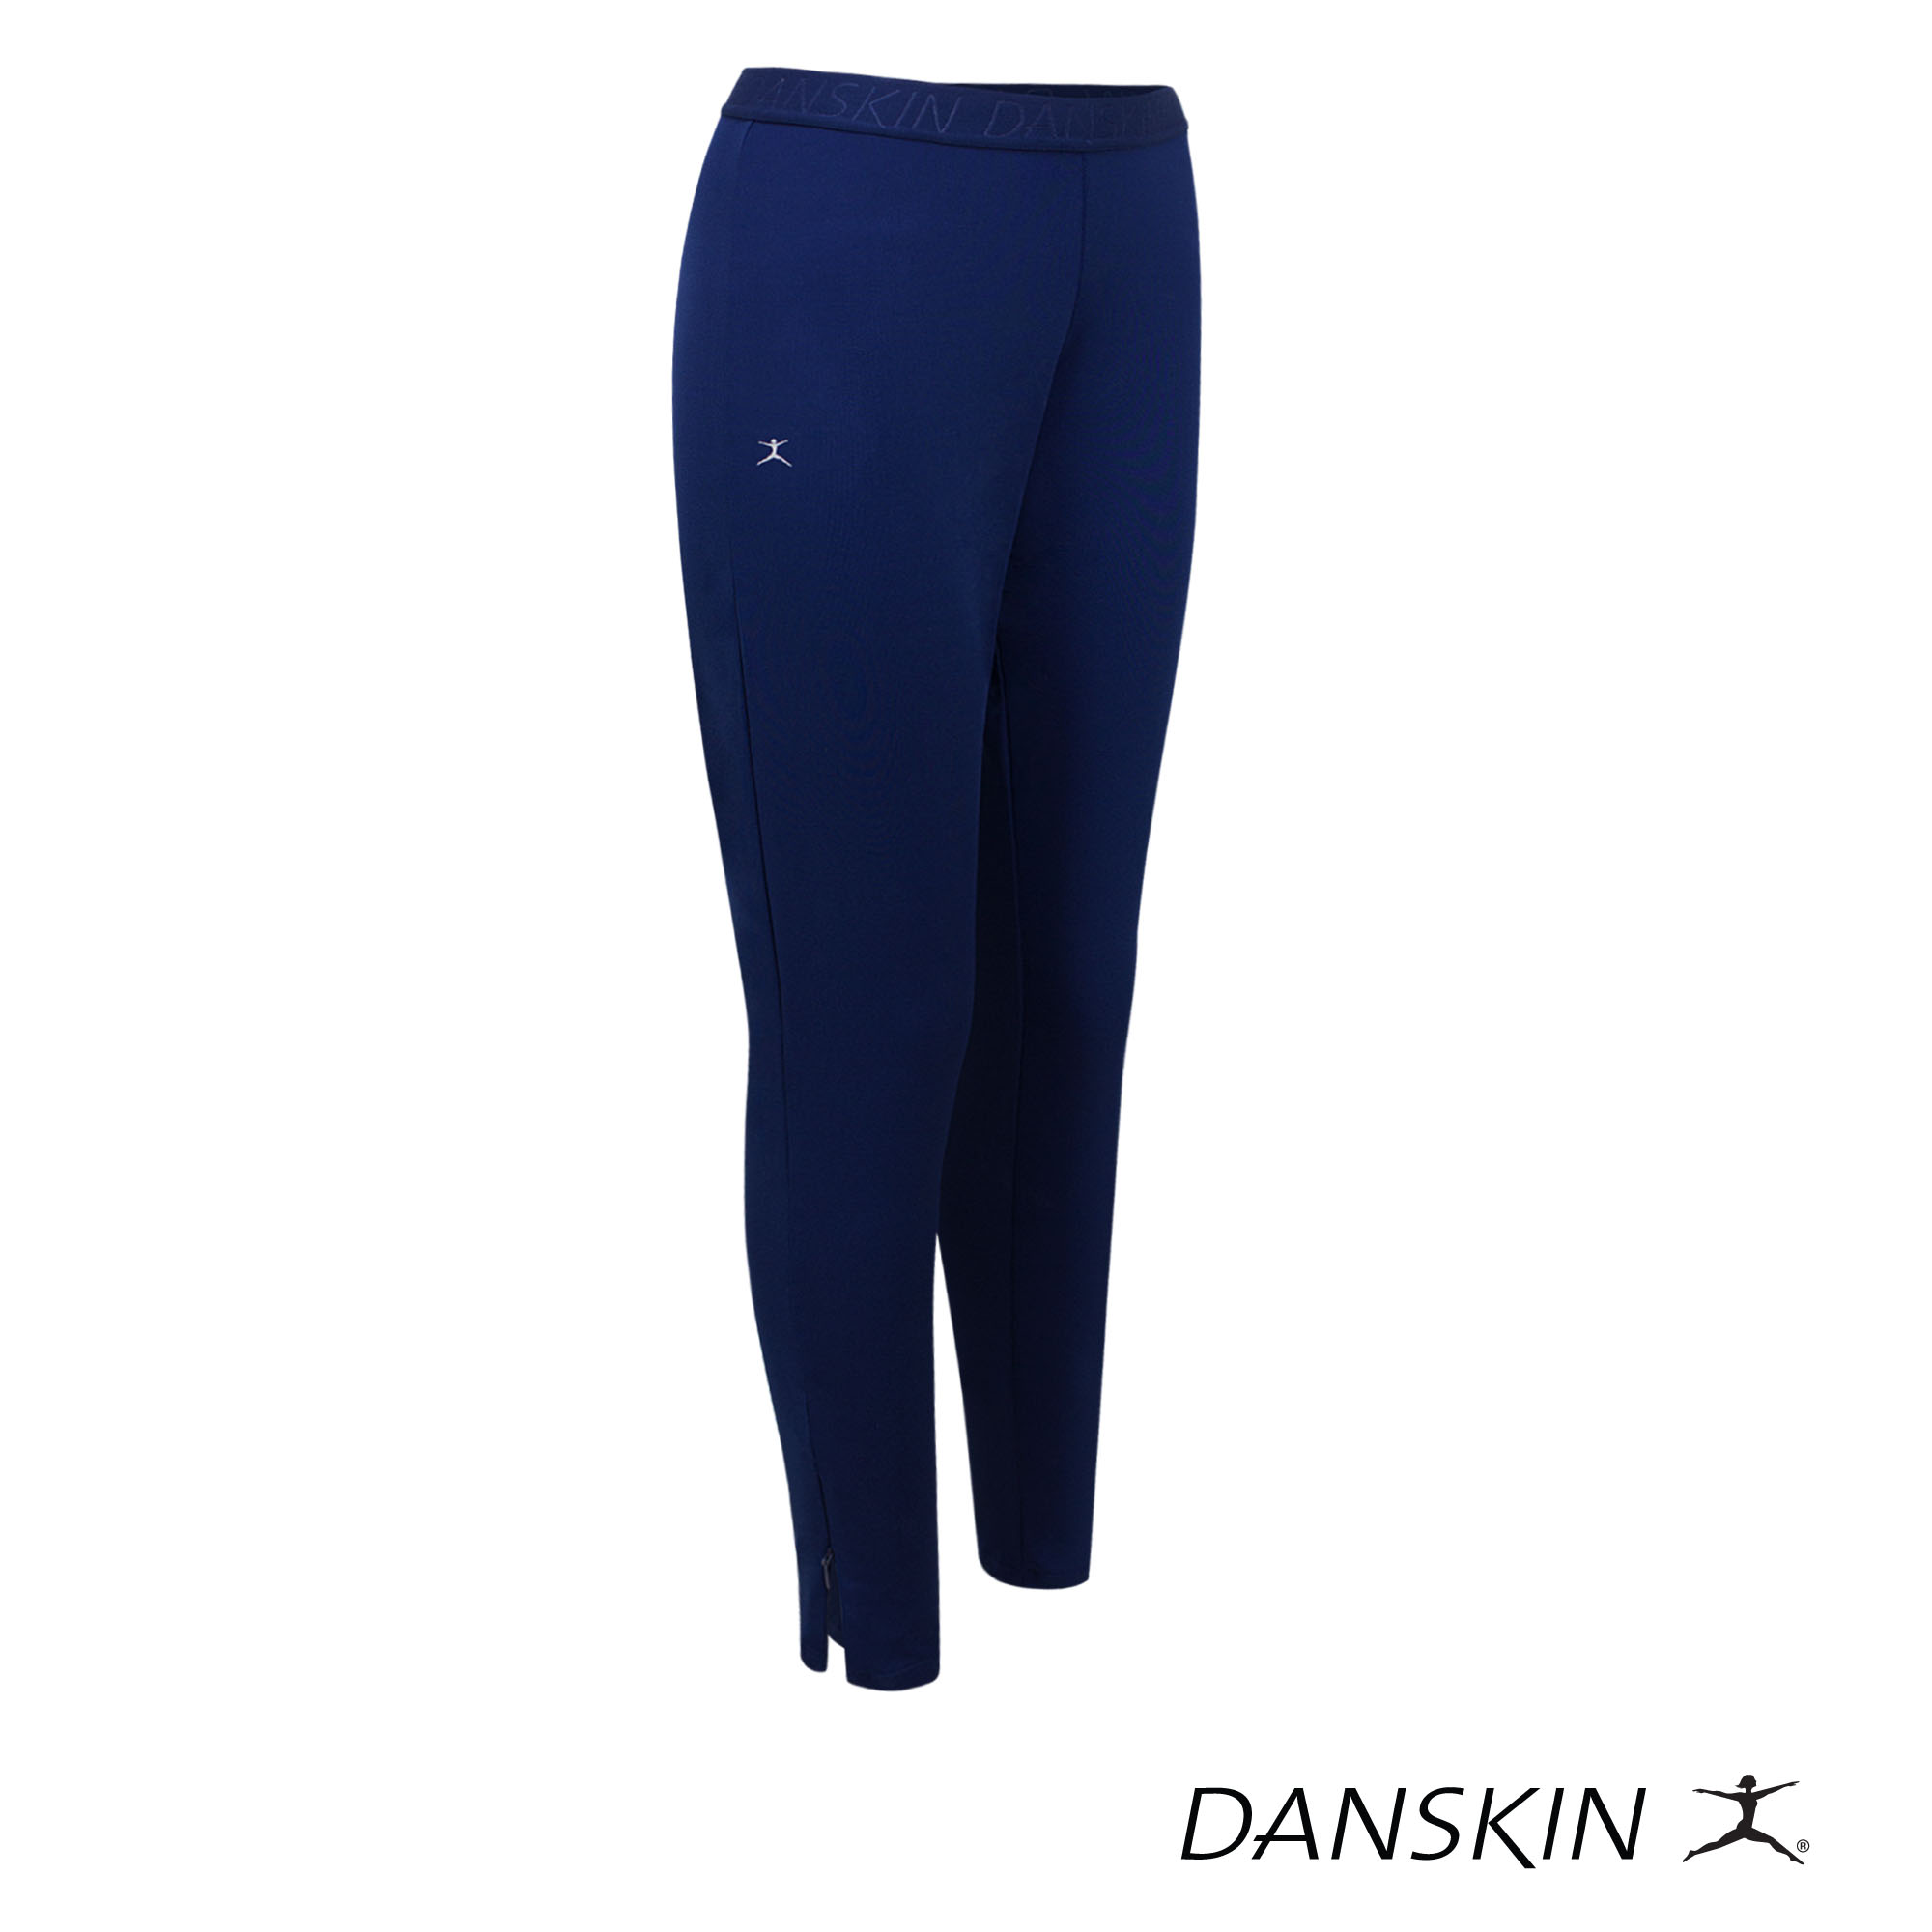 Danskin Black Body Fit Leggings w/ Hidden Back Pocket for Workout Gym  Sports Wear Athleisure Women Activewear